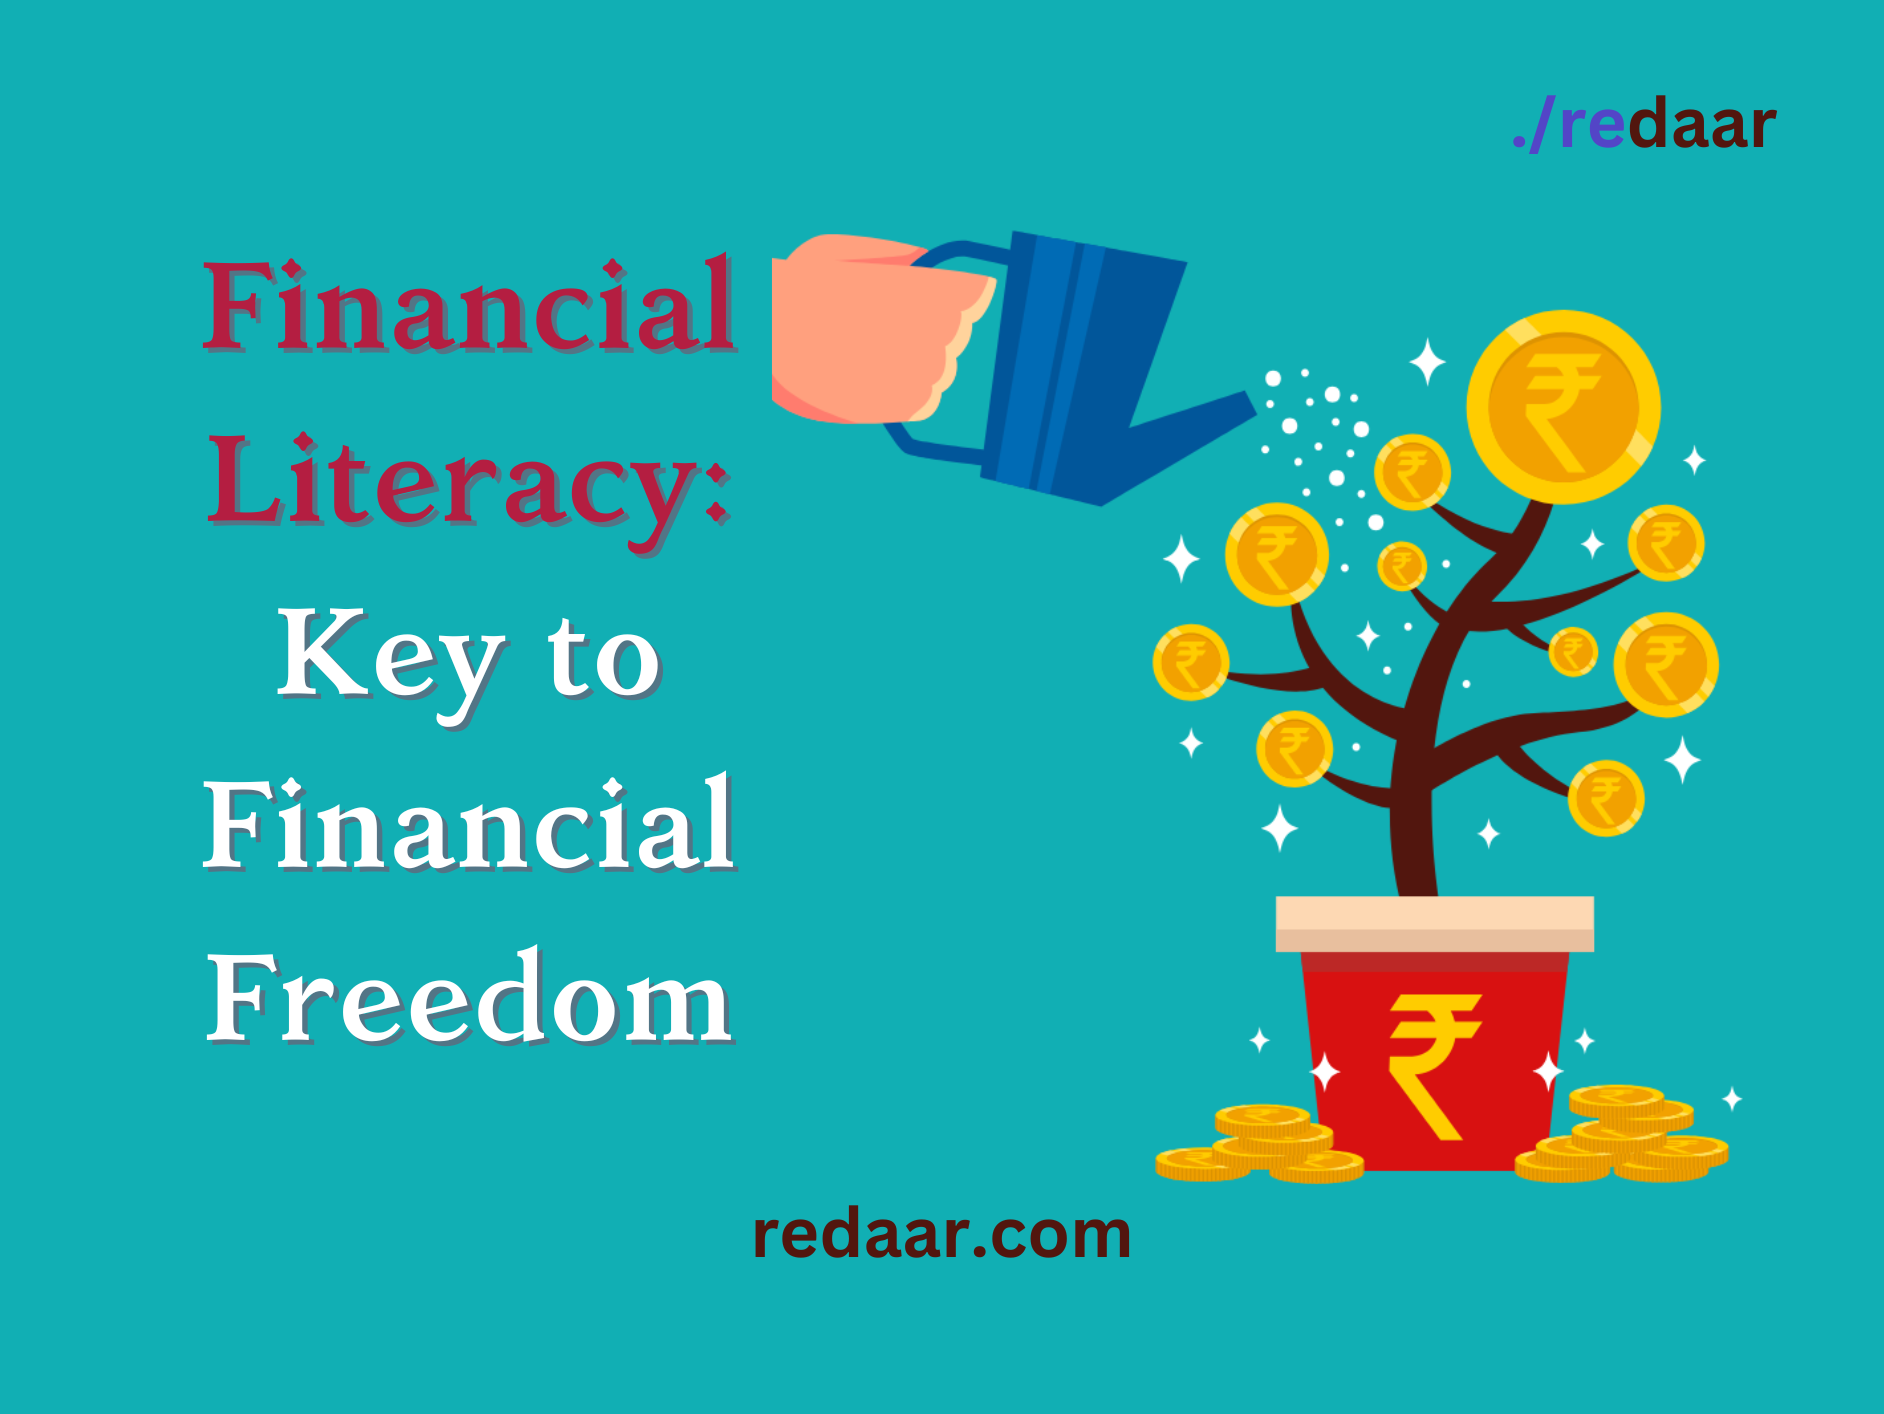 Financial Literacy: Key to Financial Freedom